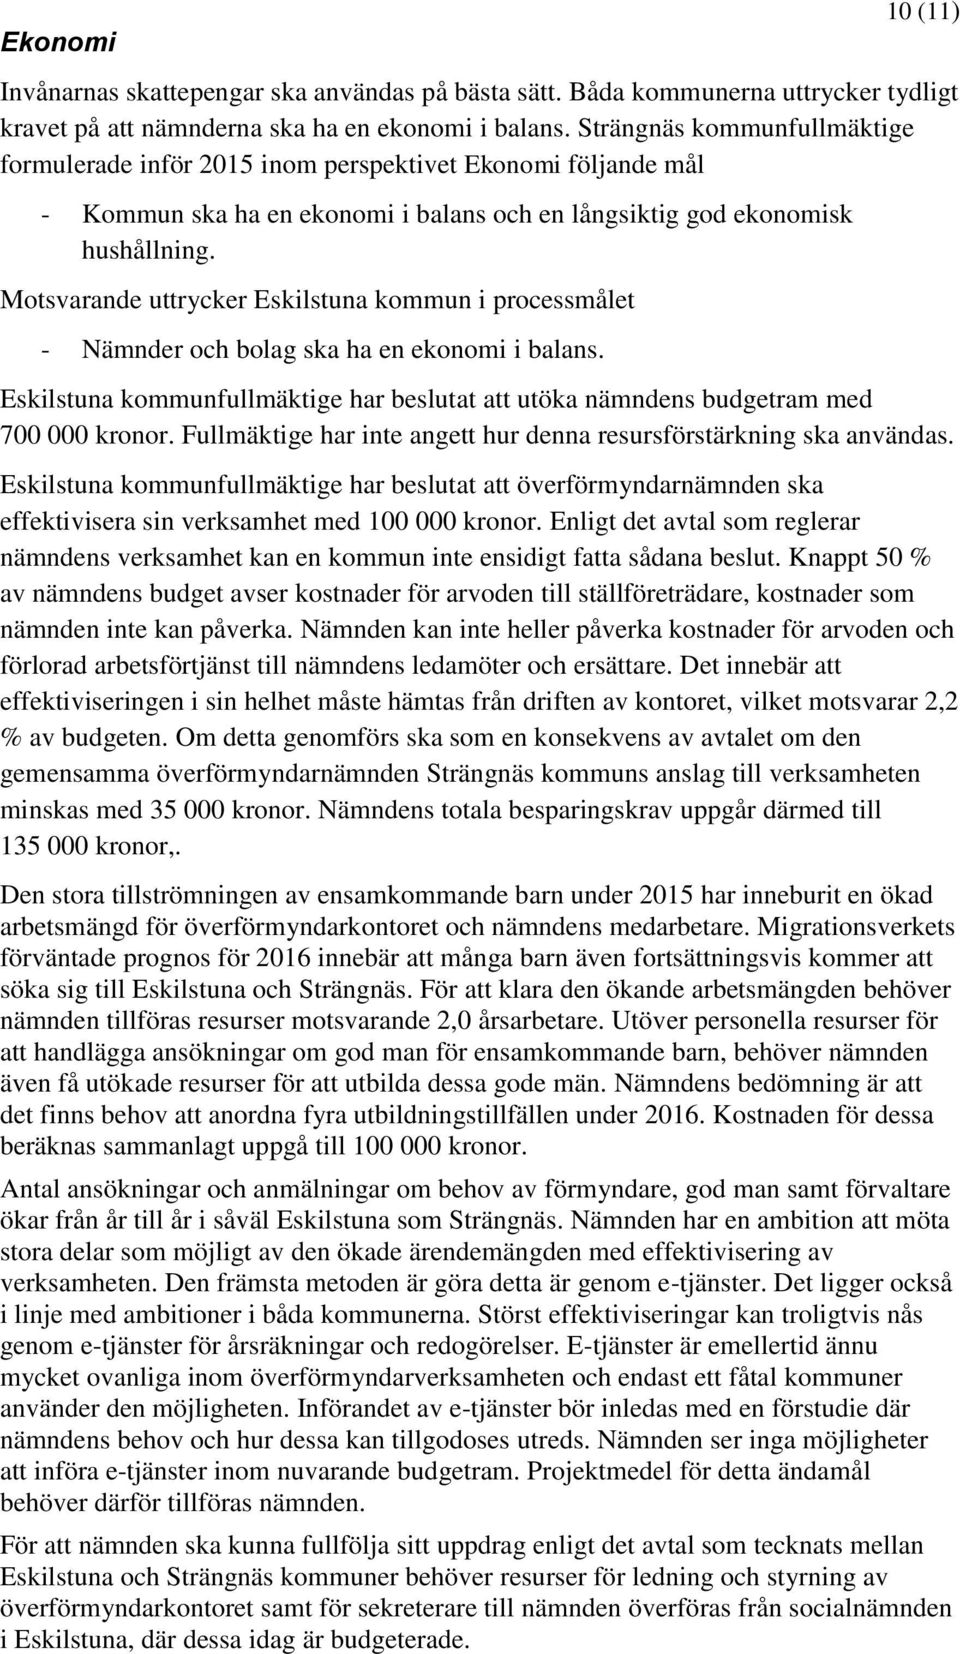 Motsvarande uttrycker Eskilstuna kommun i processmålet - Nämnder och bolag ska ha en ekonomi i balans. Eskilstuna kommunfullmäktige har beslutat att utöka nämndens budgetram med 700 000 kronor.